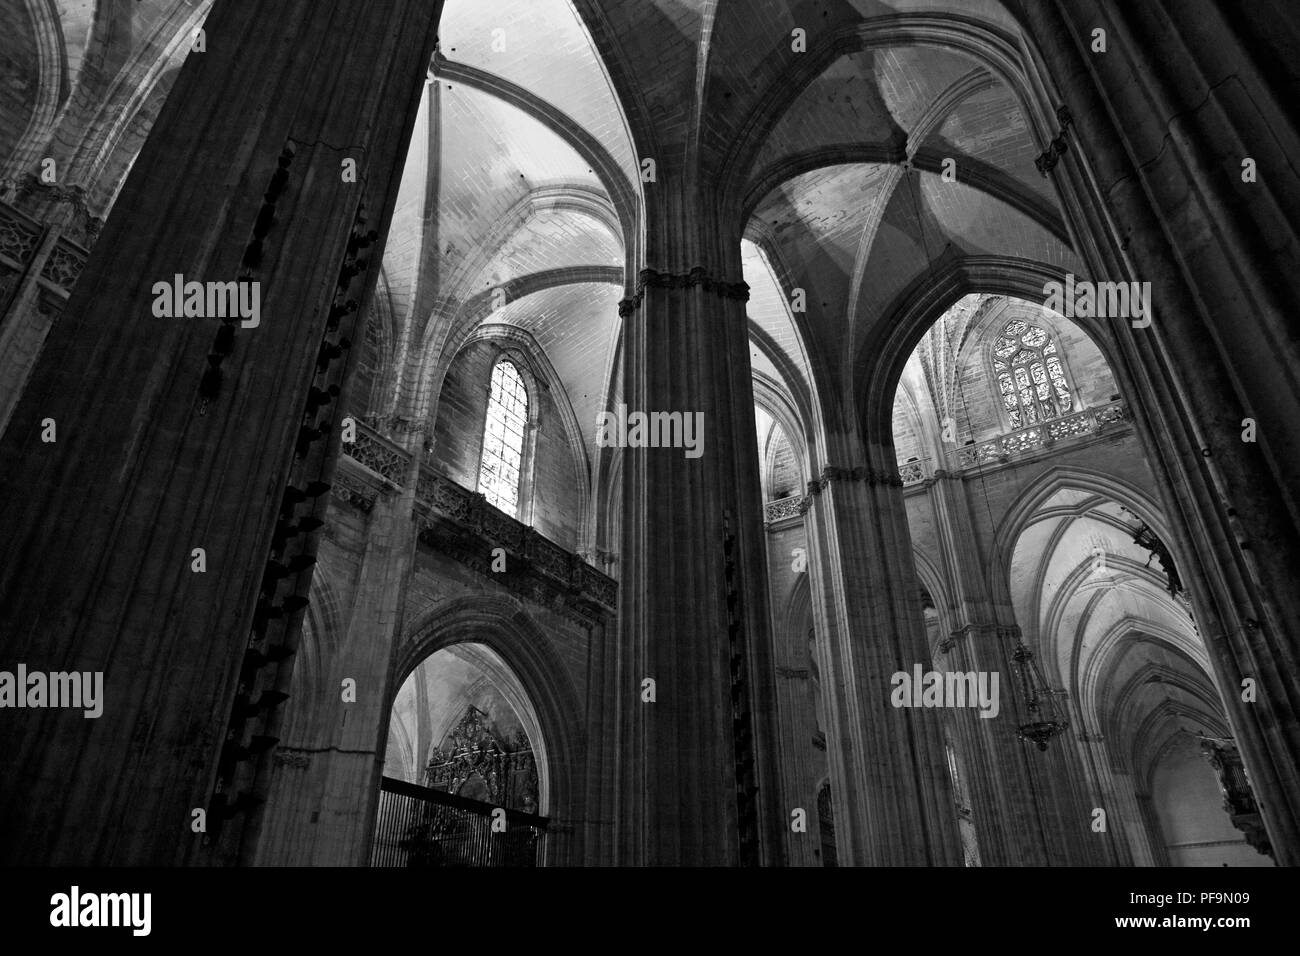 Partie de l'immense nef de la cathédrale de Santa María de la Sede. Sevilla, Espagne : la plus grande église gothique du monde. Version noir et blanc Banque D'Images